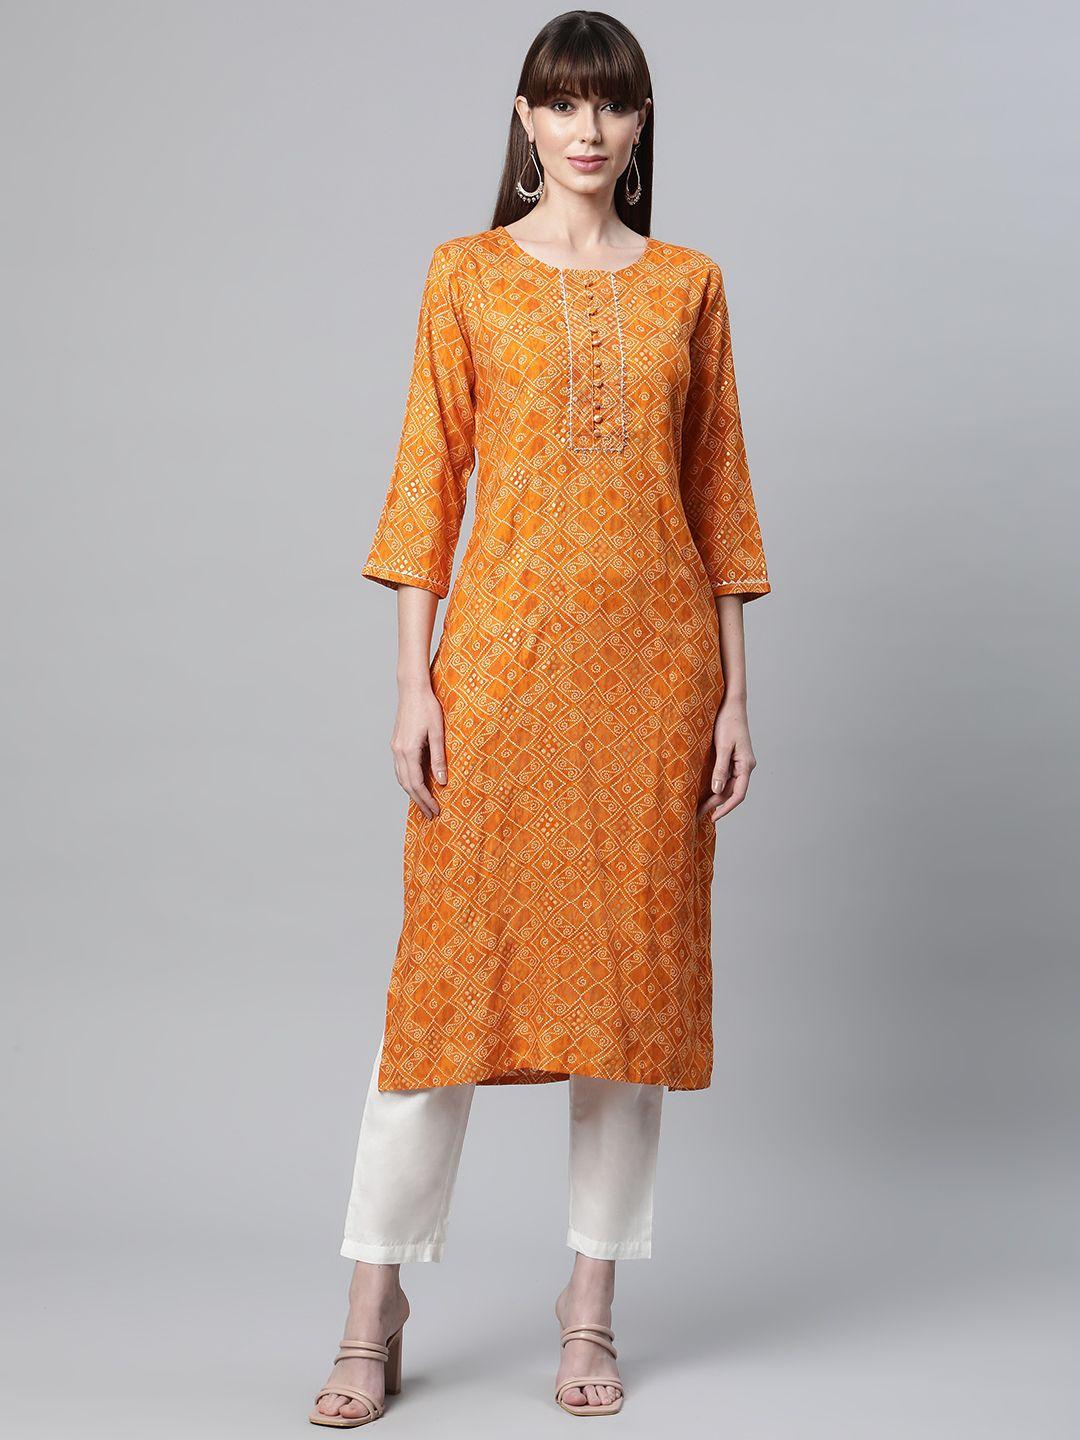 readiprint fashions women orange bandhani printed kurta